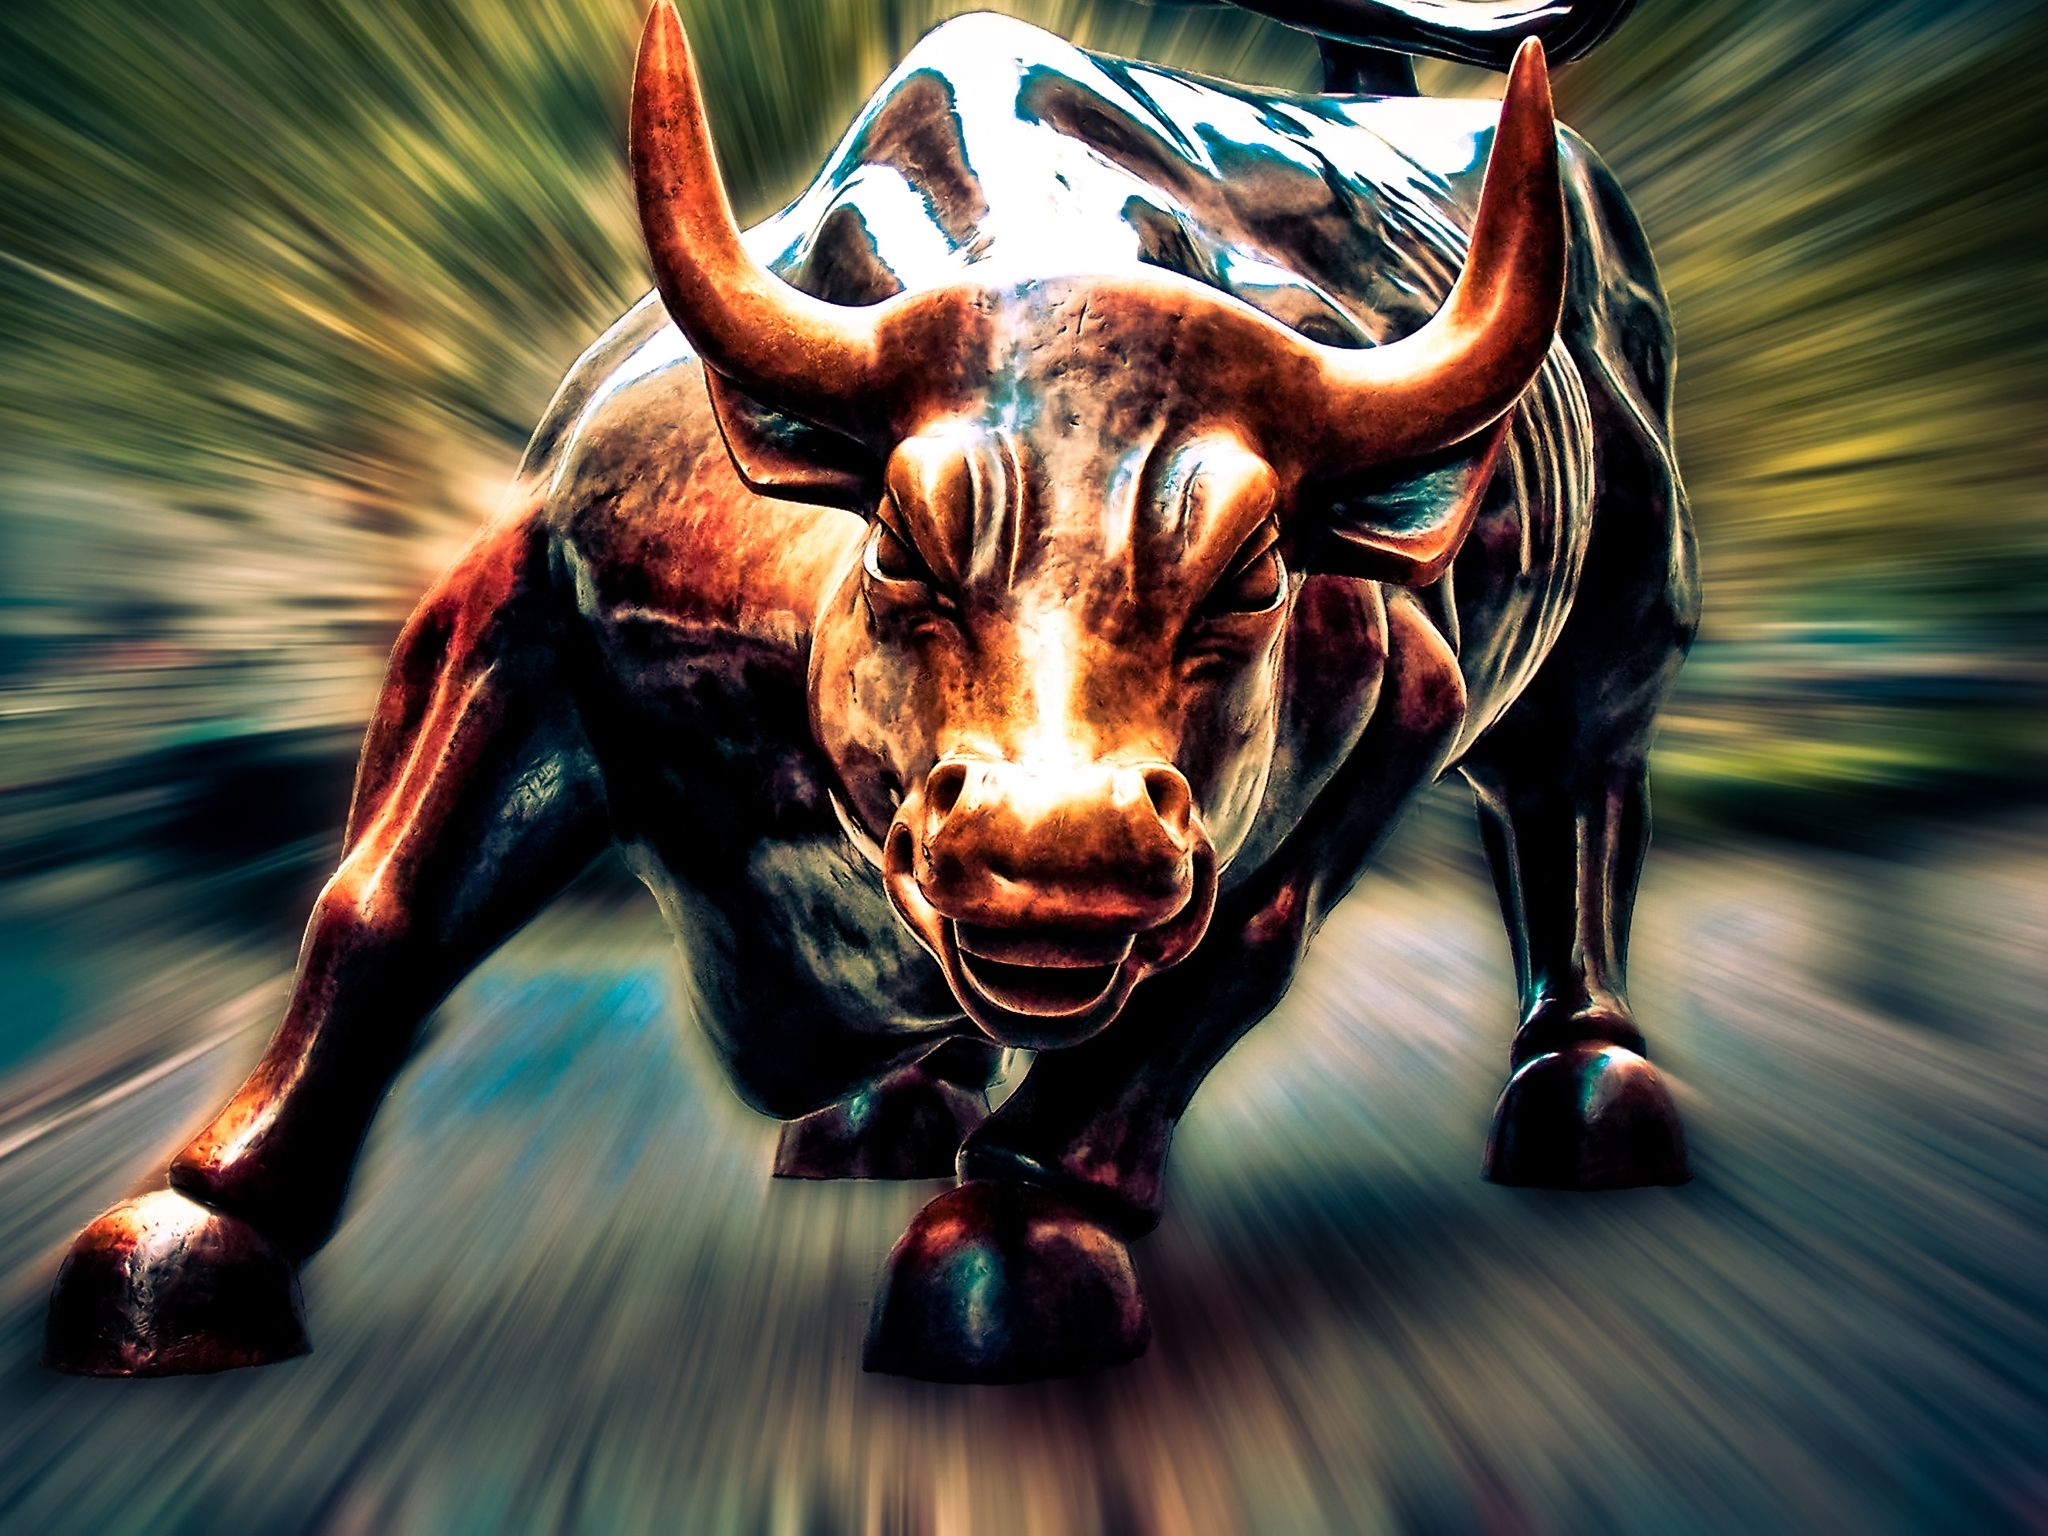 2048x1536 Pin by Roberto robles on Wall Street | Bull art, Bulls wallpaper, Bull tattoos